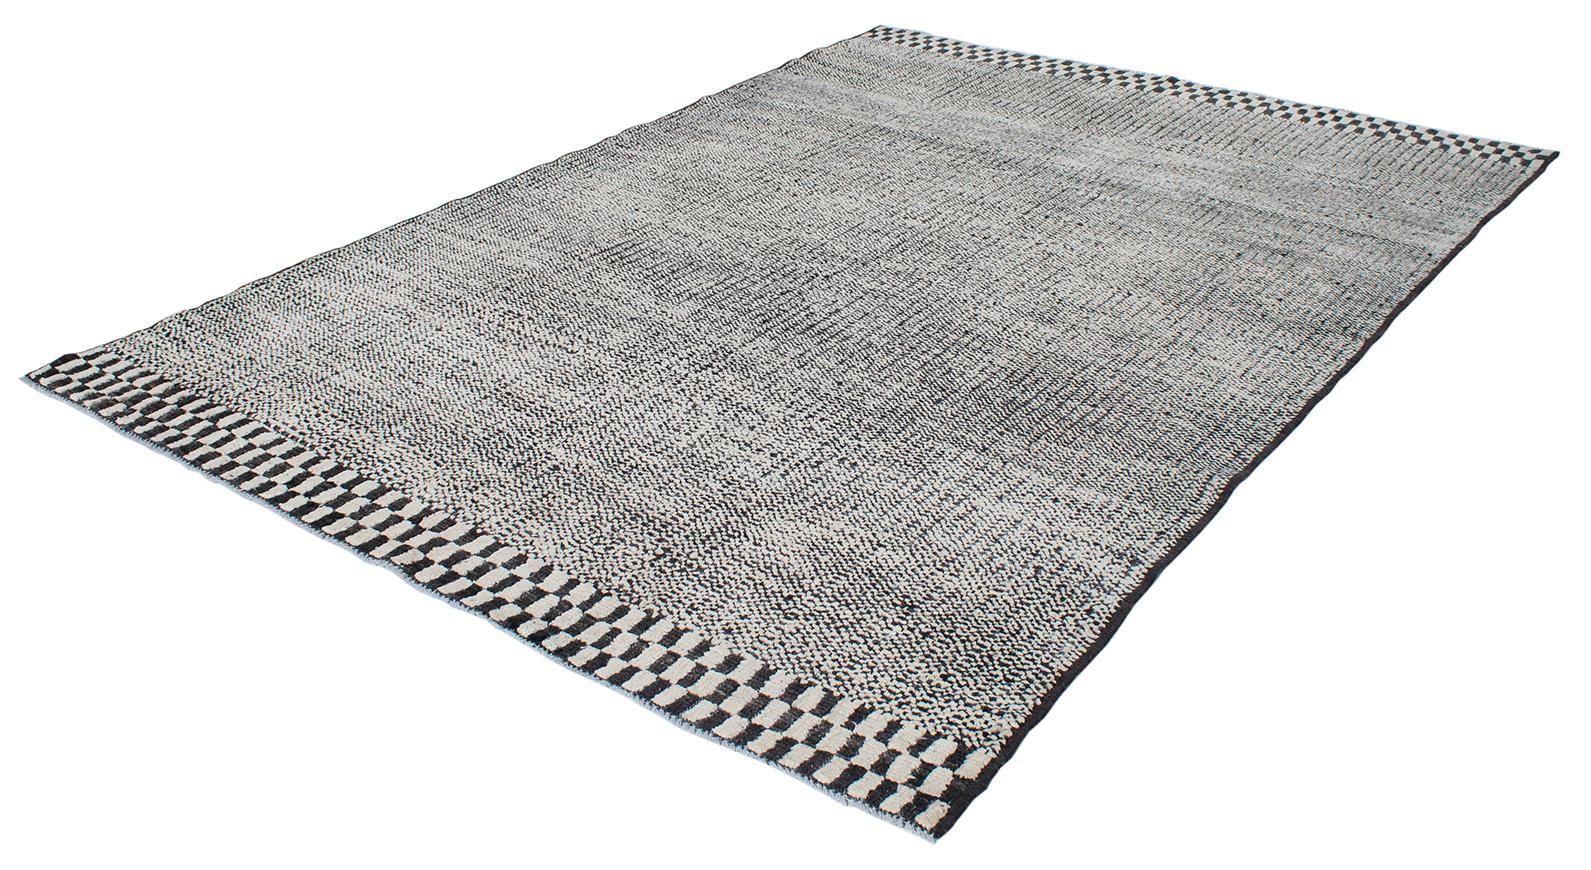 Schöner moderner Teppich, handgeknüpft aus Wolle und Baumwolle. Es hat einen schwarz-weiß karierten Rand oben und unten mit einem linearen Feld.
Der Teppich misst 6'3